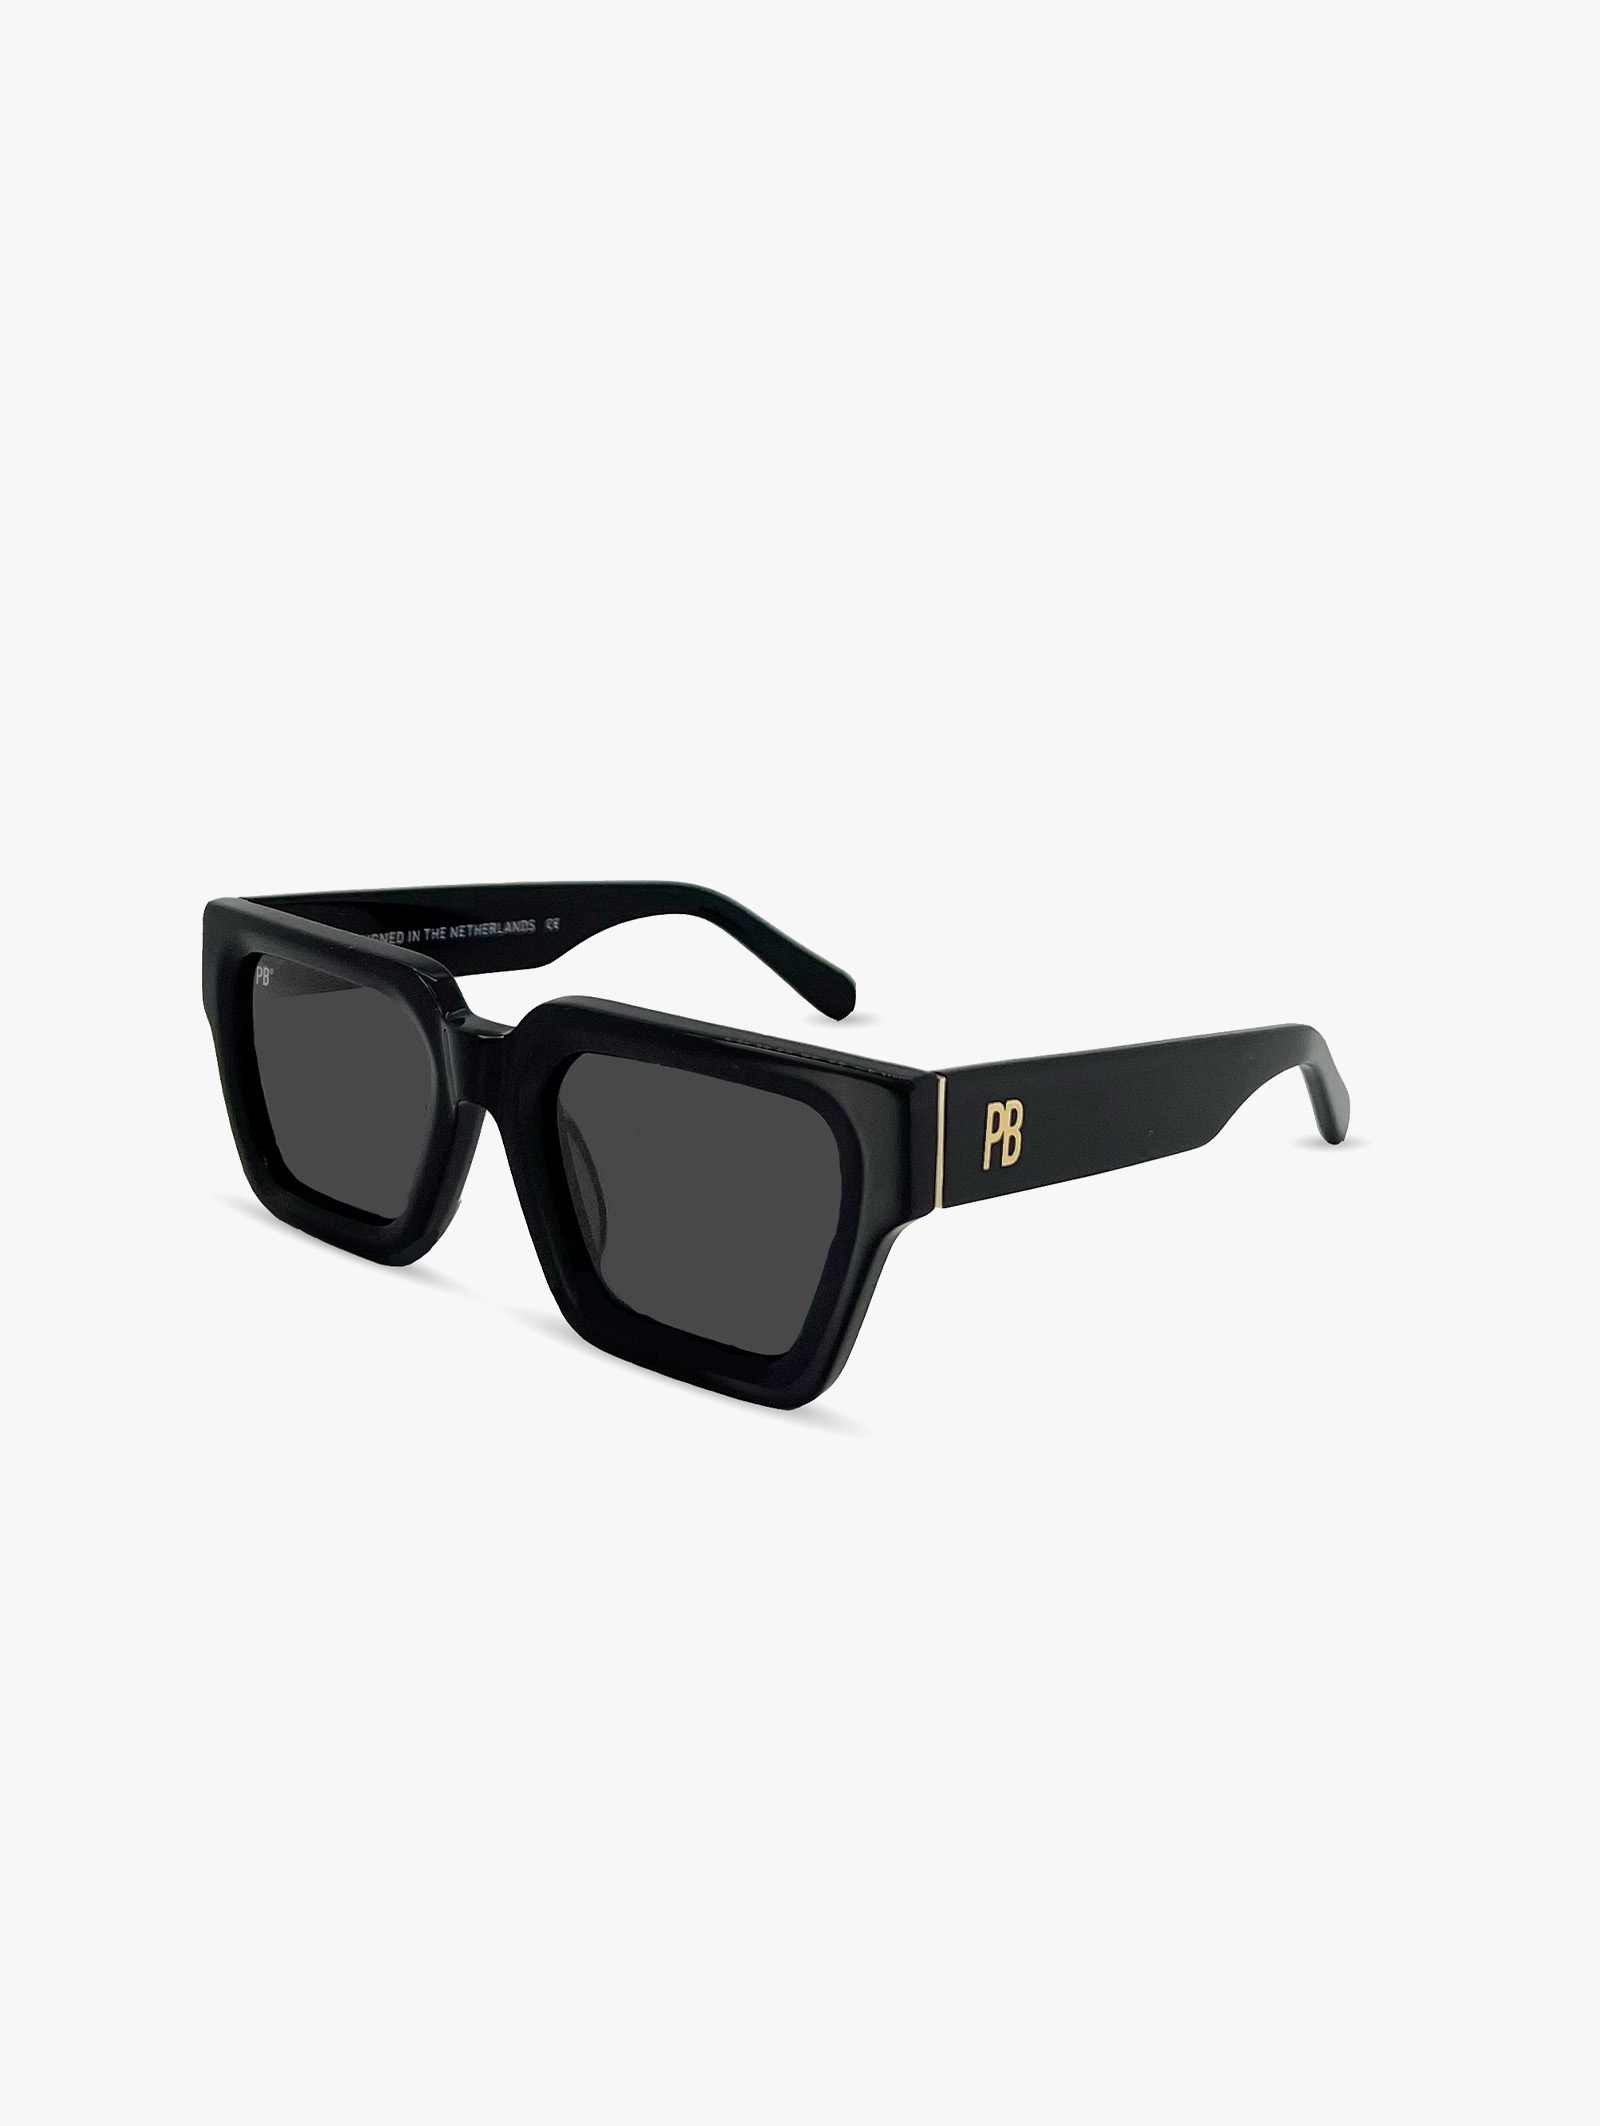 Lunettes de soleil noires élégantes de PB Sunglasses convenant aux femmes et aux hommes